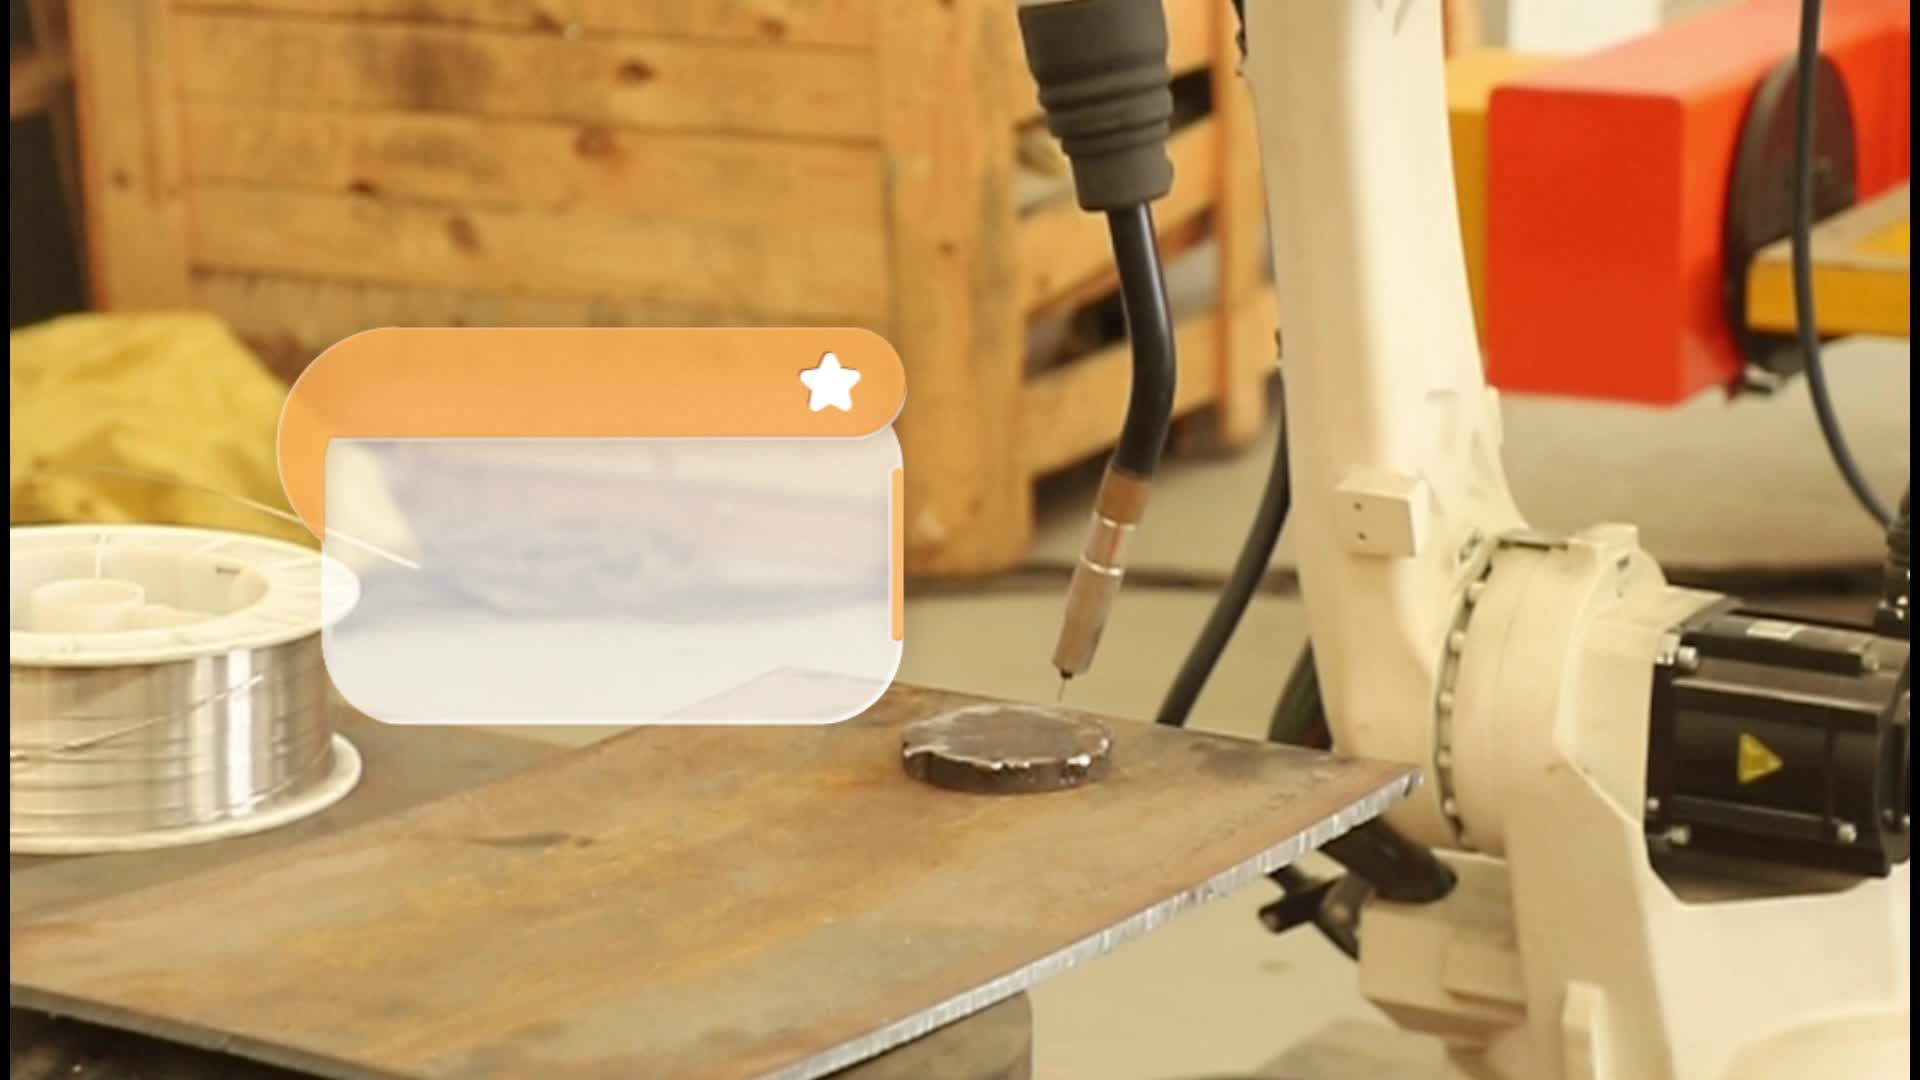 焊接机器人粘丝的解决方法#机器人 #电路原理 #产品方案 #pcb 